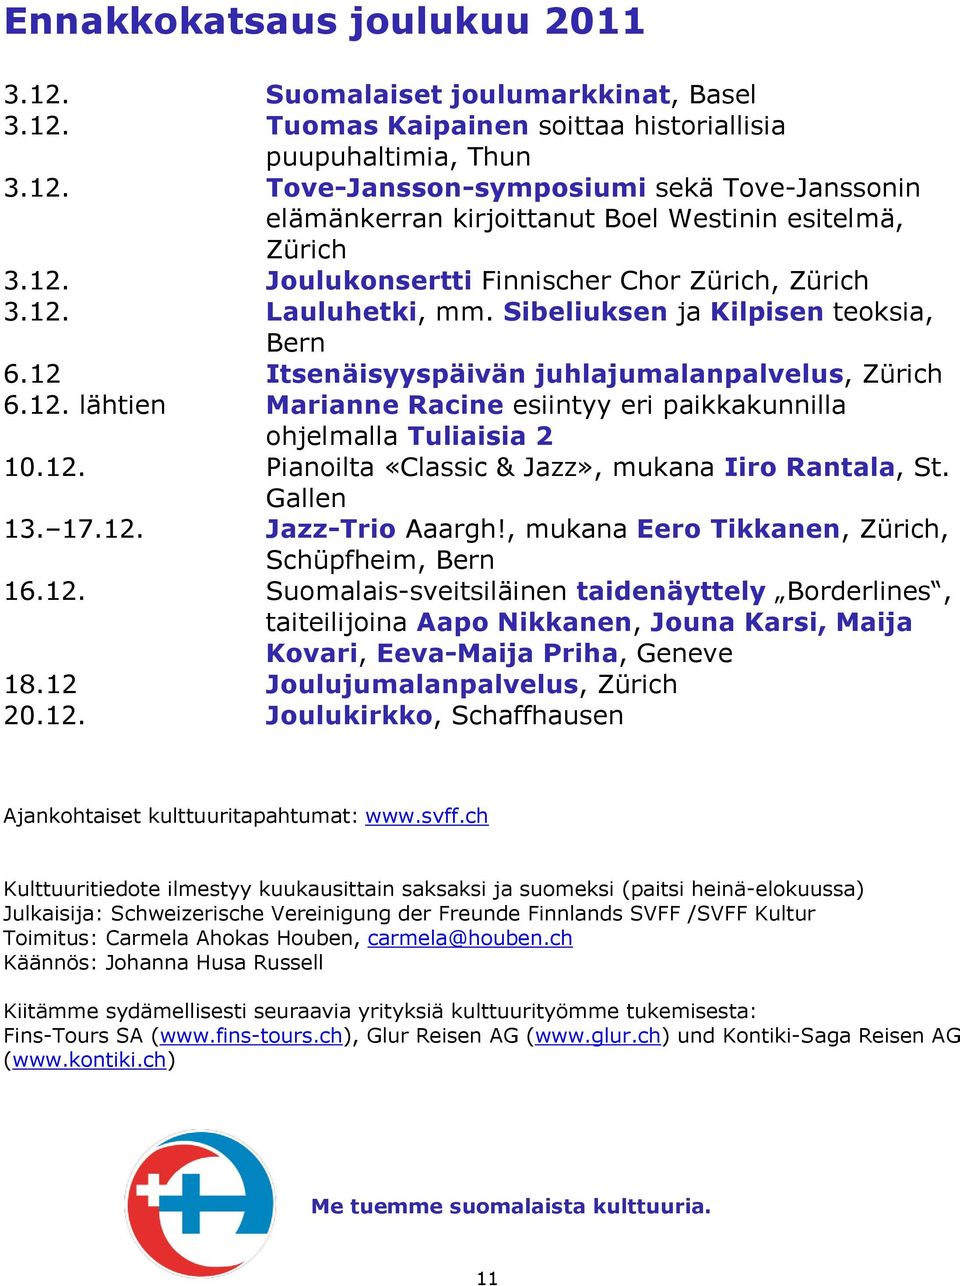 12. Pianoilta «Classic & Jazz», mukana Iiro Rantala, St. Gallen 13. 17.12. Jazz-Trio Aaargh!, mukana Eero Tikkanen, Zürich, Schüpfheim, Bern 16.12. Suomalais-sveitsiläinen taidenäyttely Borderlines, taiteilijoina Aapo Nikkanen, Jouna Karsi, Maija Kovari, Eeva-Maija Priha, Geneve 18.